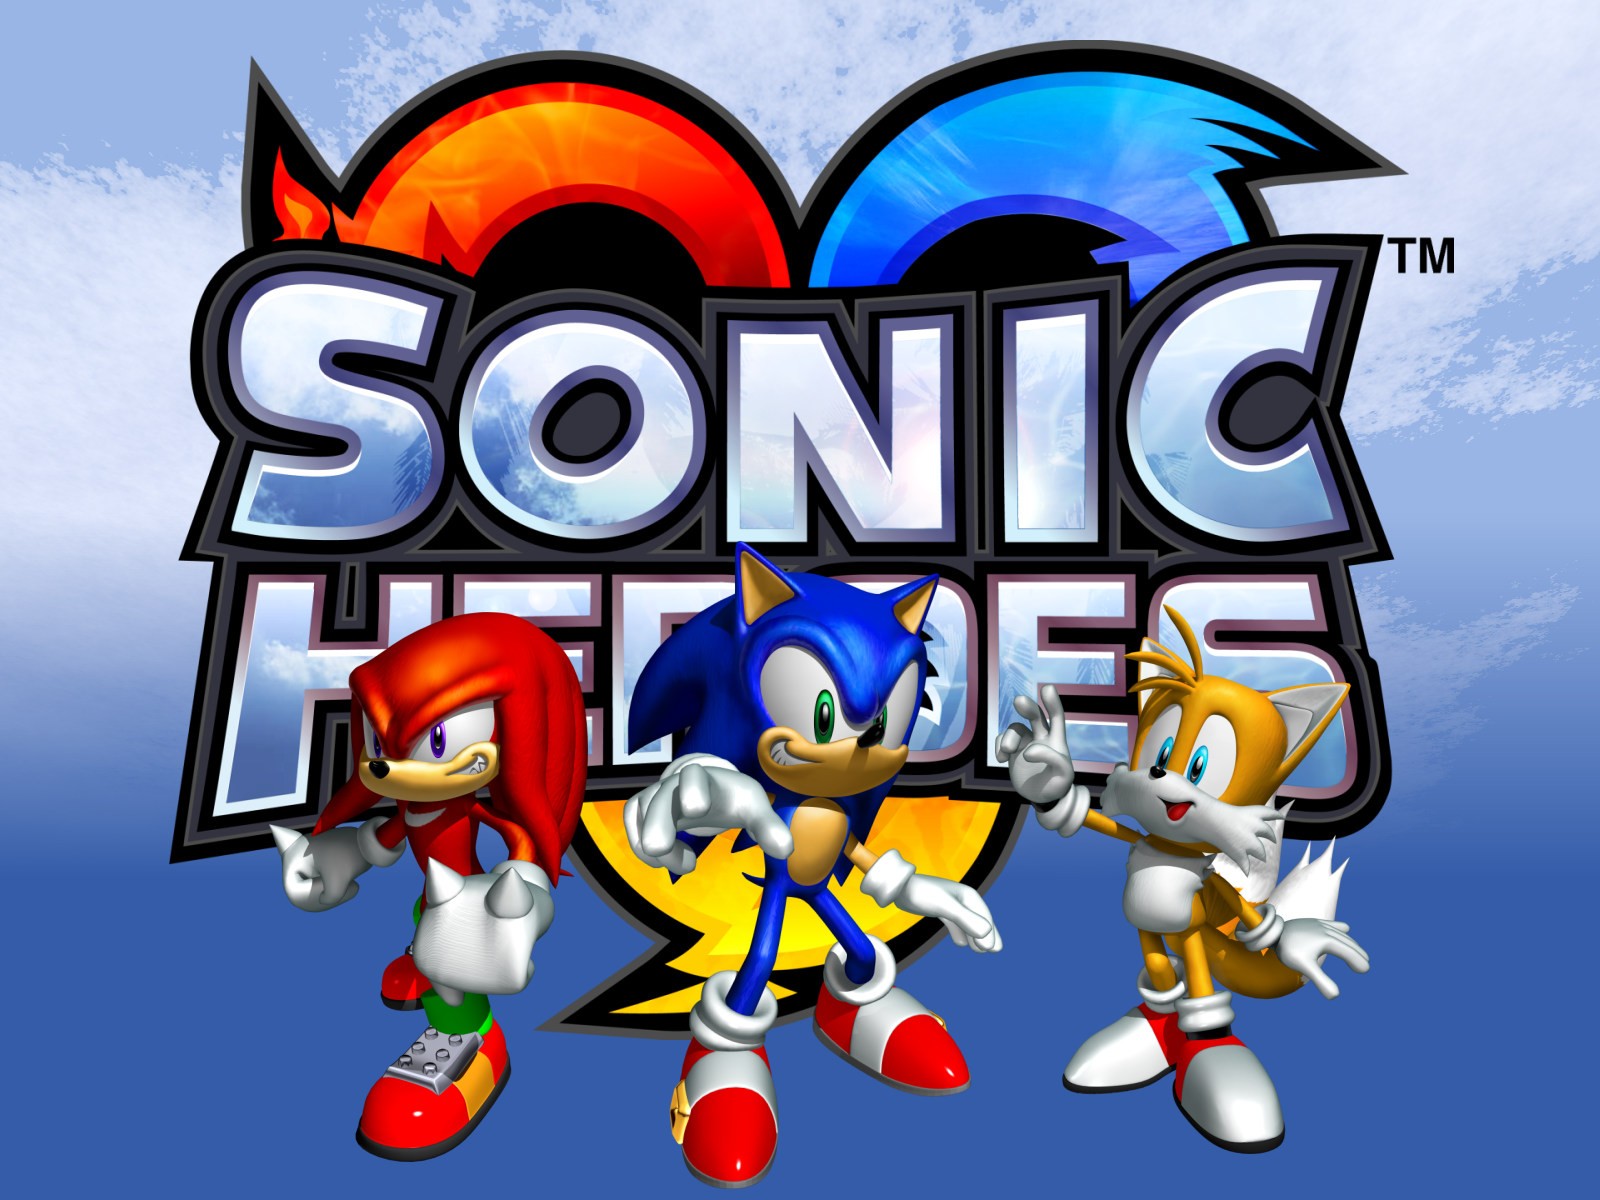 "Sonic Heroes" desktop wallpaper 3 (1600 x 1200 pixels)